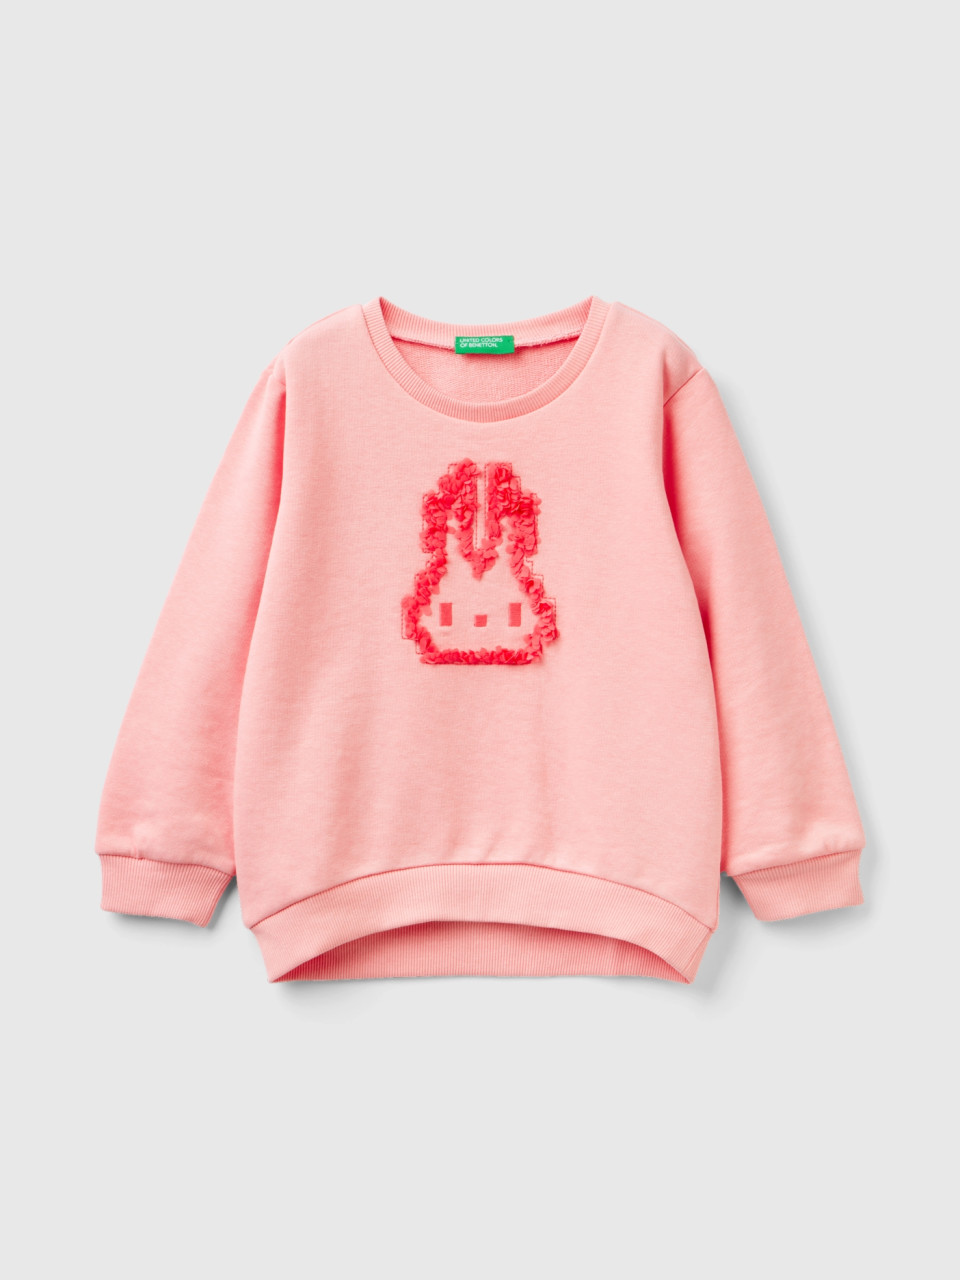 Benetton, Sweatshirt With Petal Applique, Pink, Kids